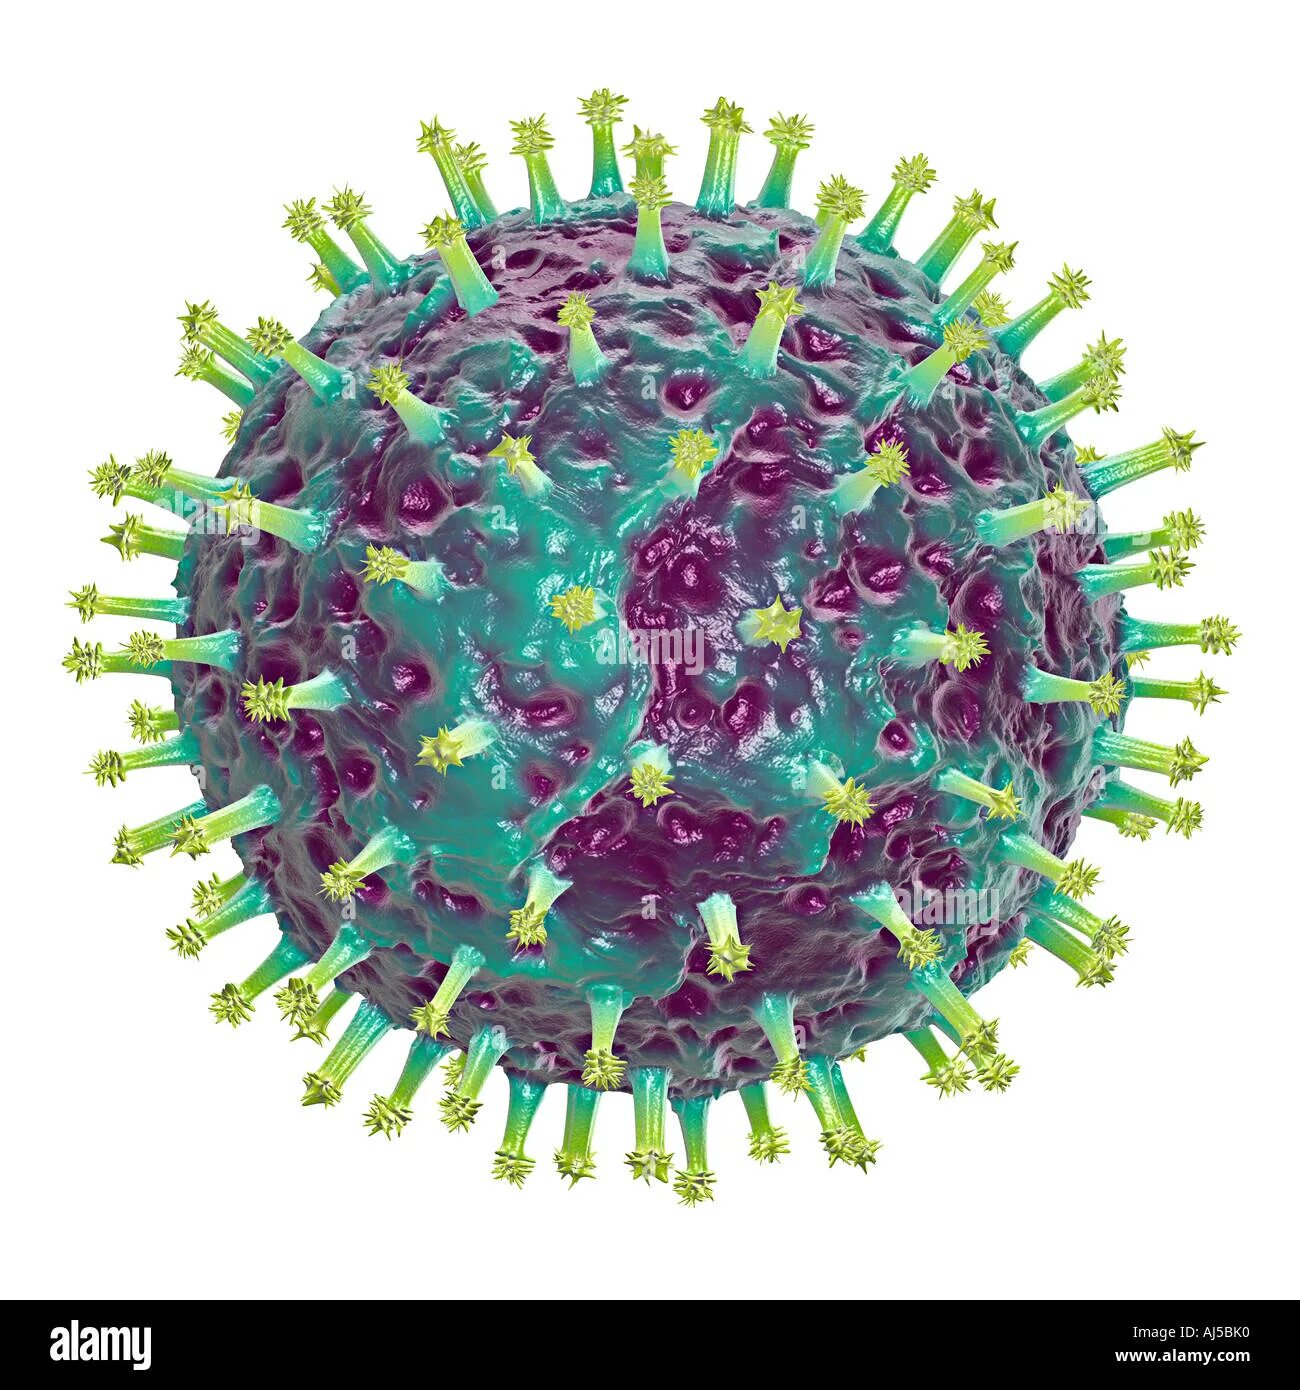 Респираторно-синцитиальный вирус человека. Респираторно- синцитиальный вирус резистентность. Вирус гриппа. Изображение вируса гриппа. Вирусы гриппа d